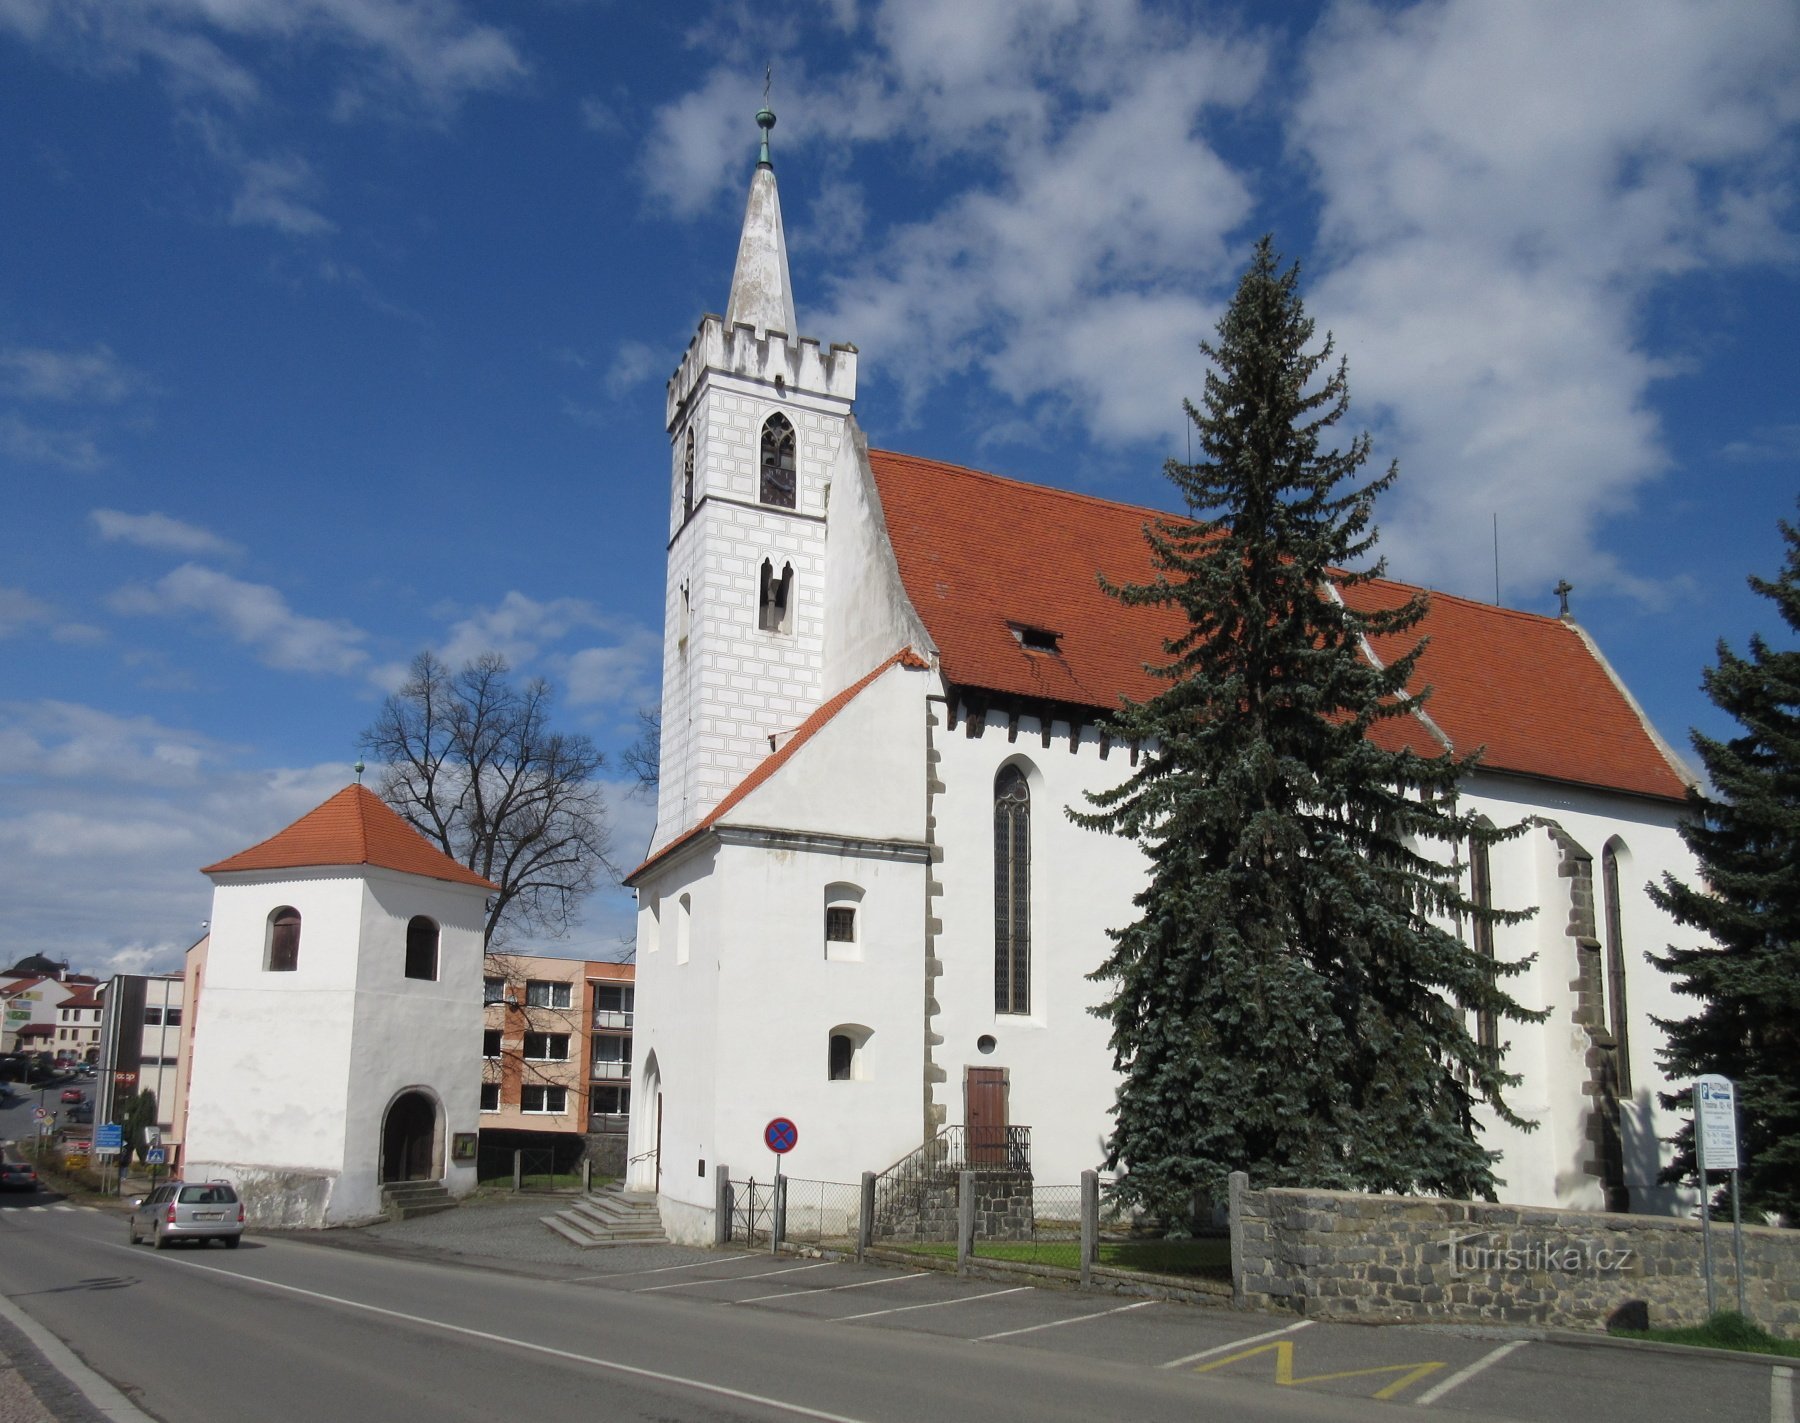 Sedlčany - Geschichte und Zentrum der Stadt